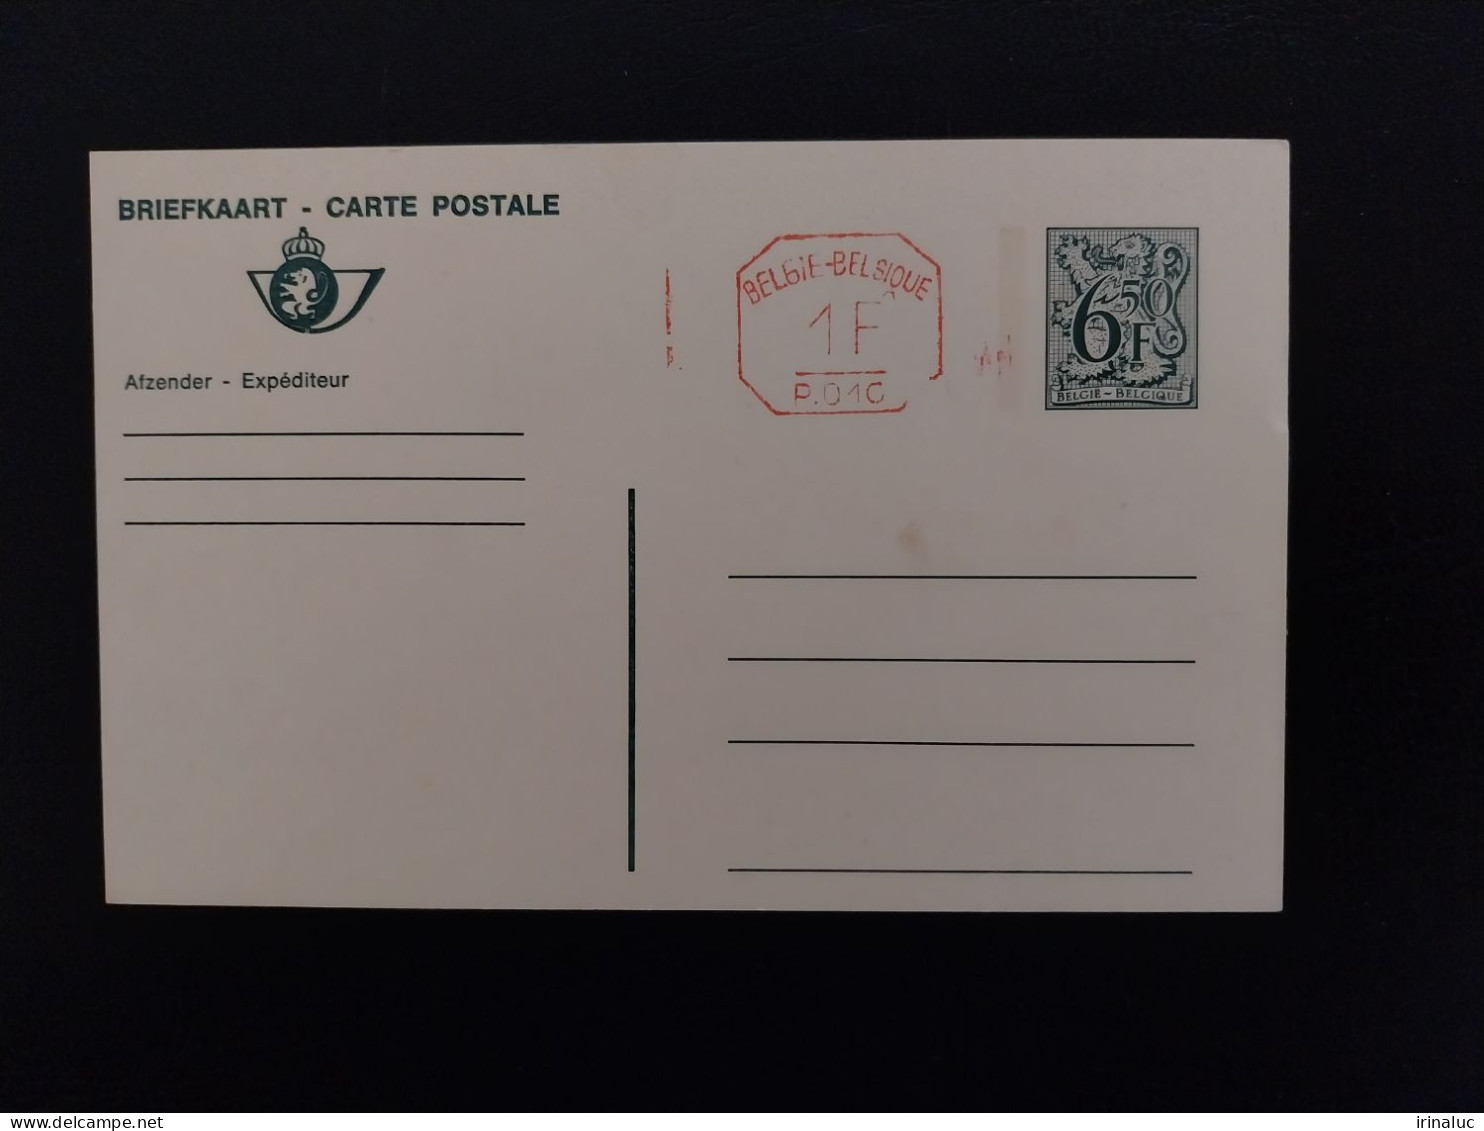 Briefkaart 190-II P010B - Cartes Postales 1951-..